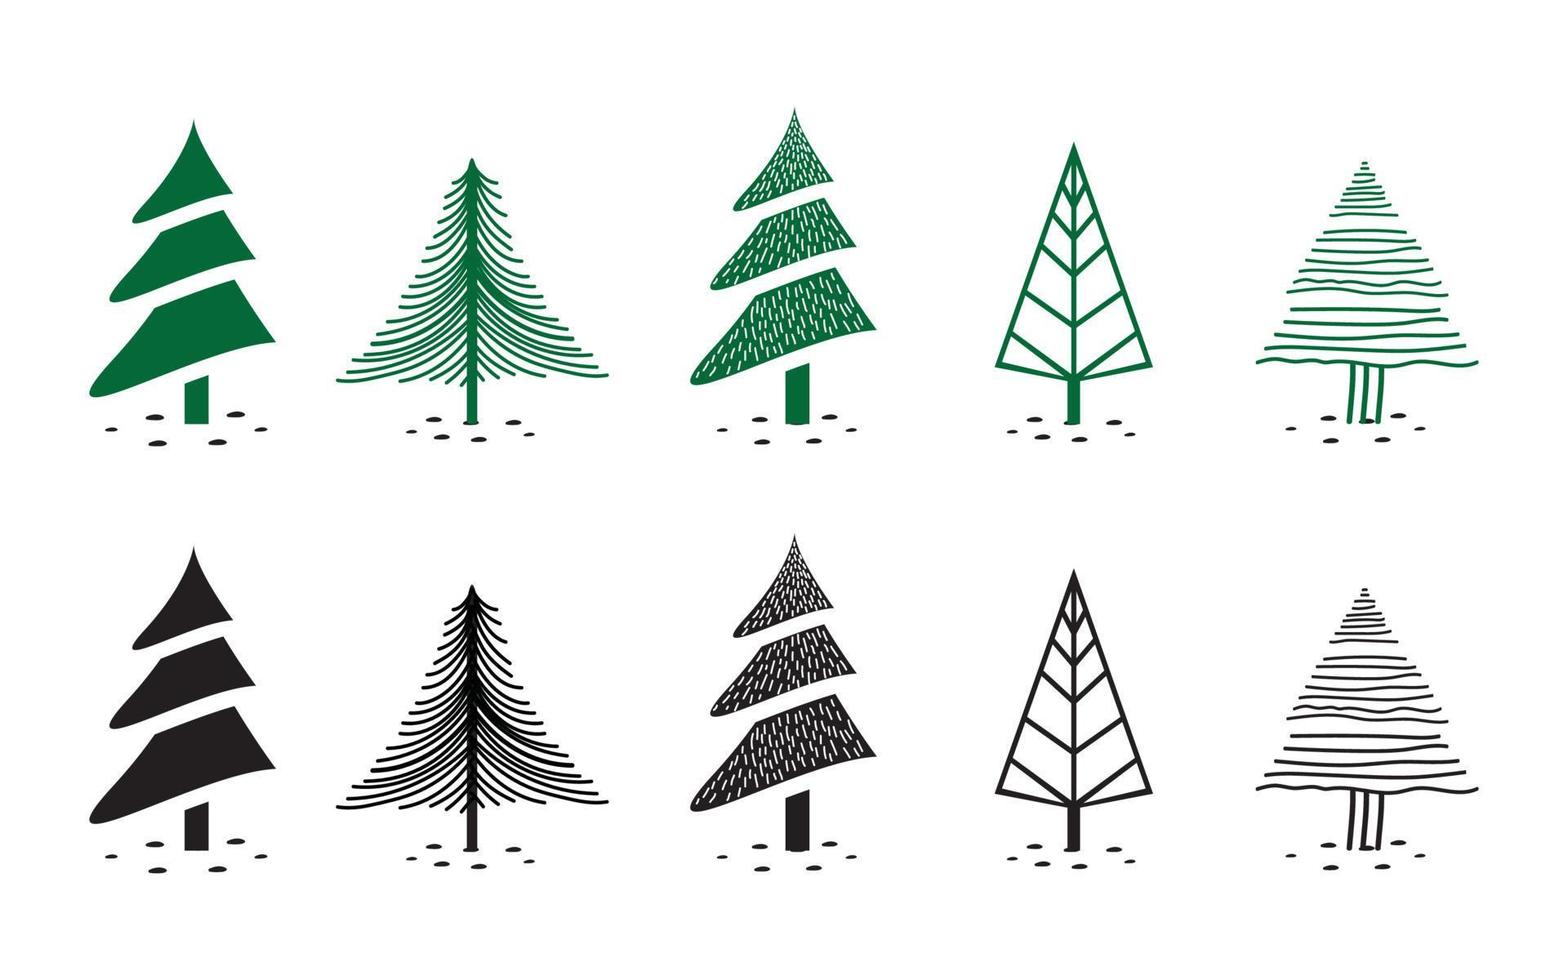 kerstboom illustratie set - verschillende boomvormen in een handgetekende stijl. vector